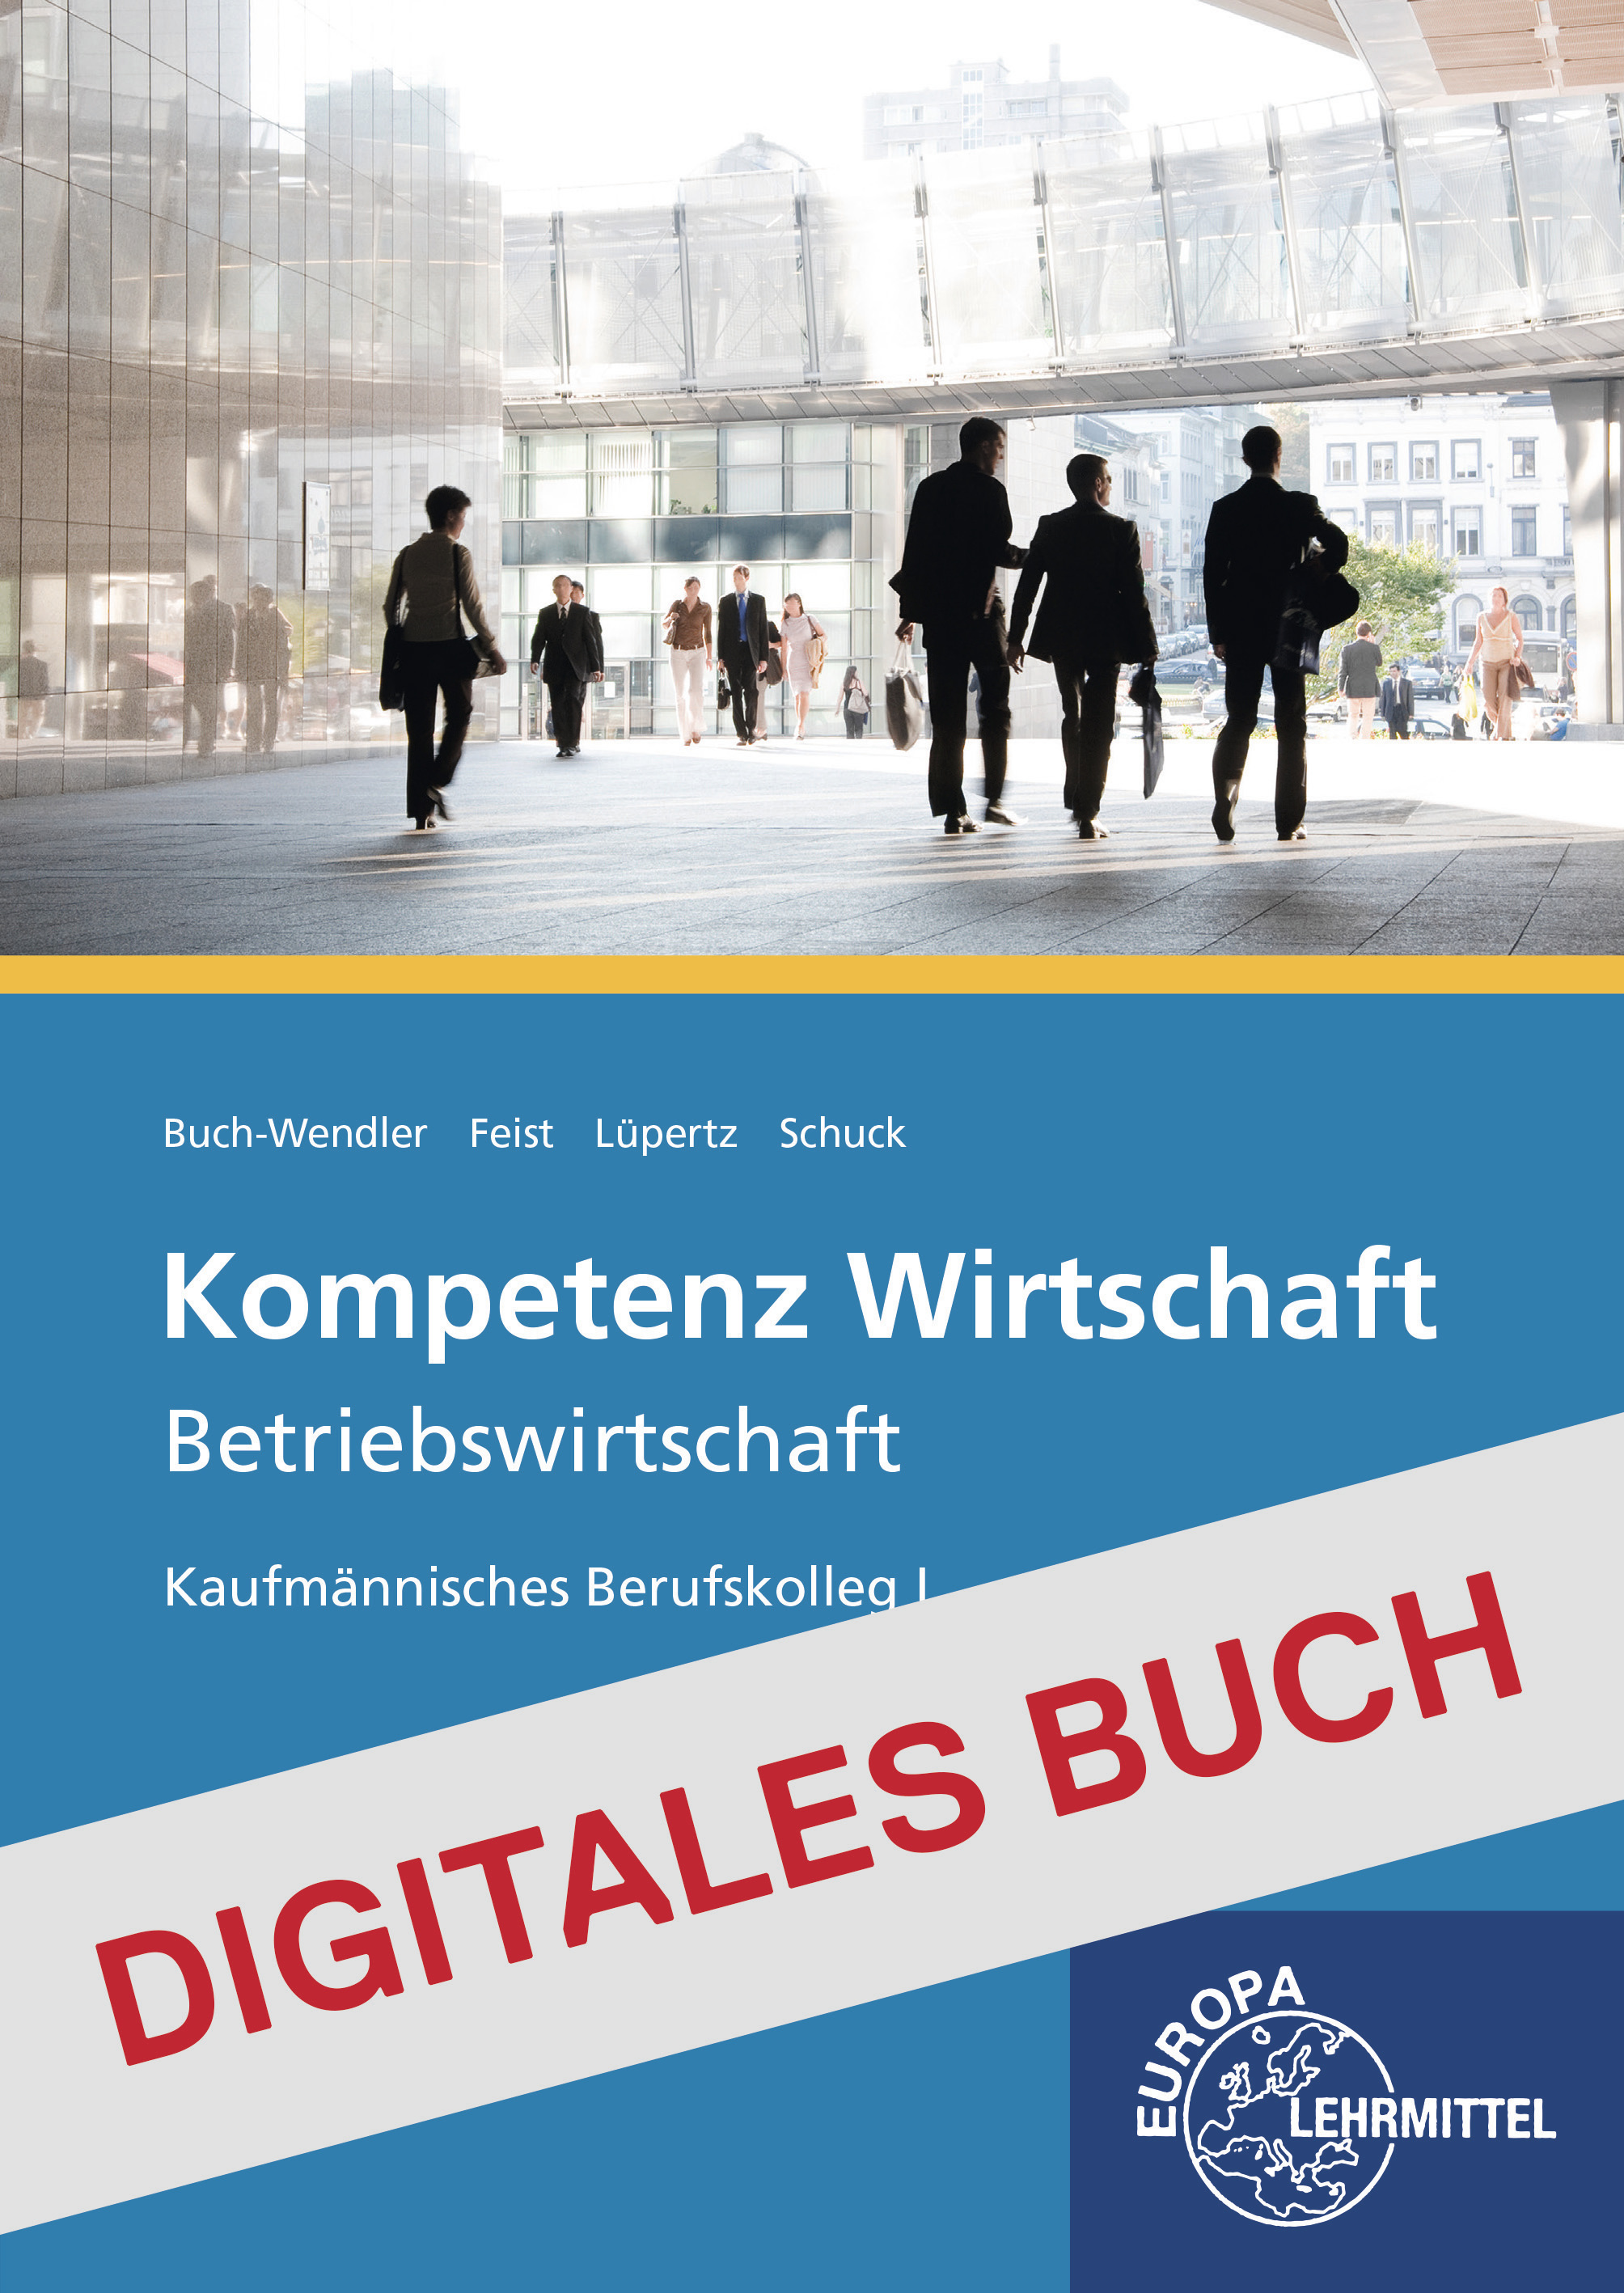 Kompetenz Wirtschaft, Betriebswirtschaft - Digitales Buch